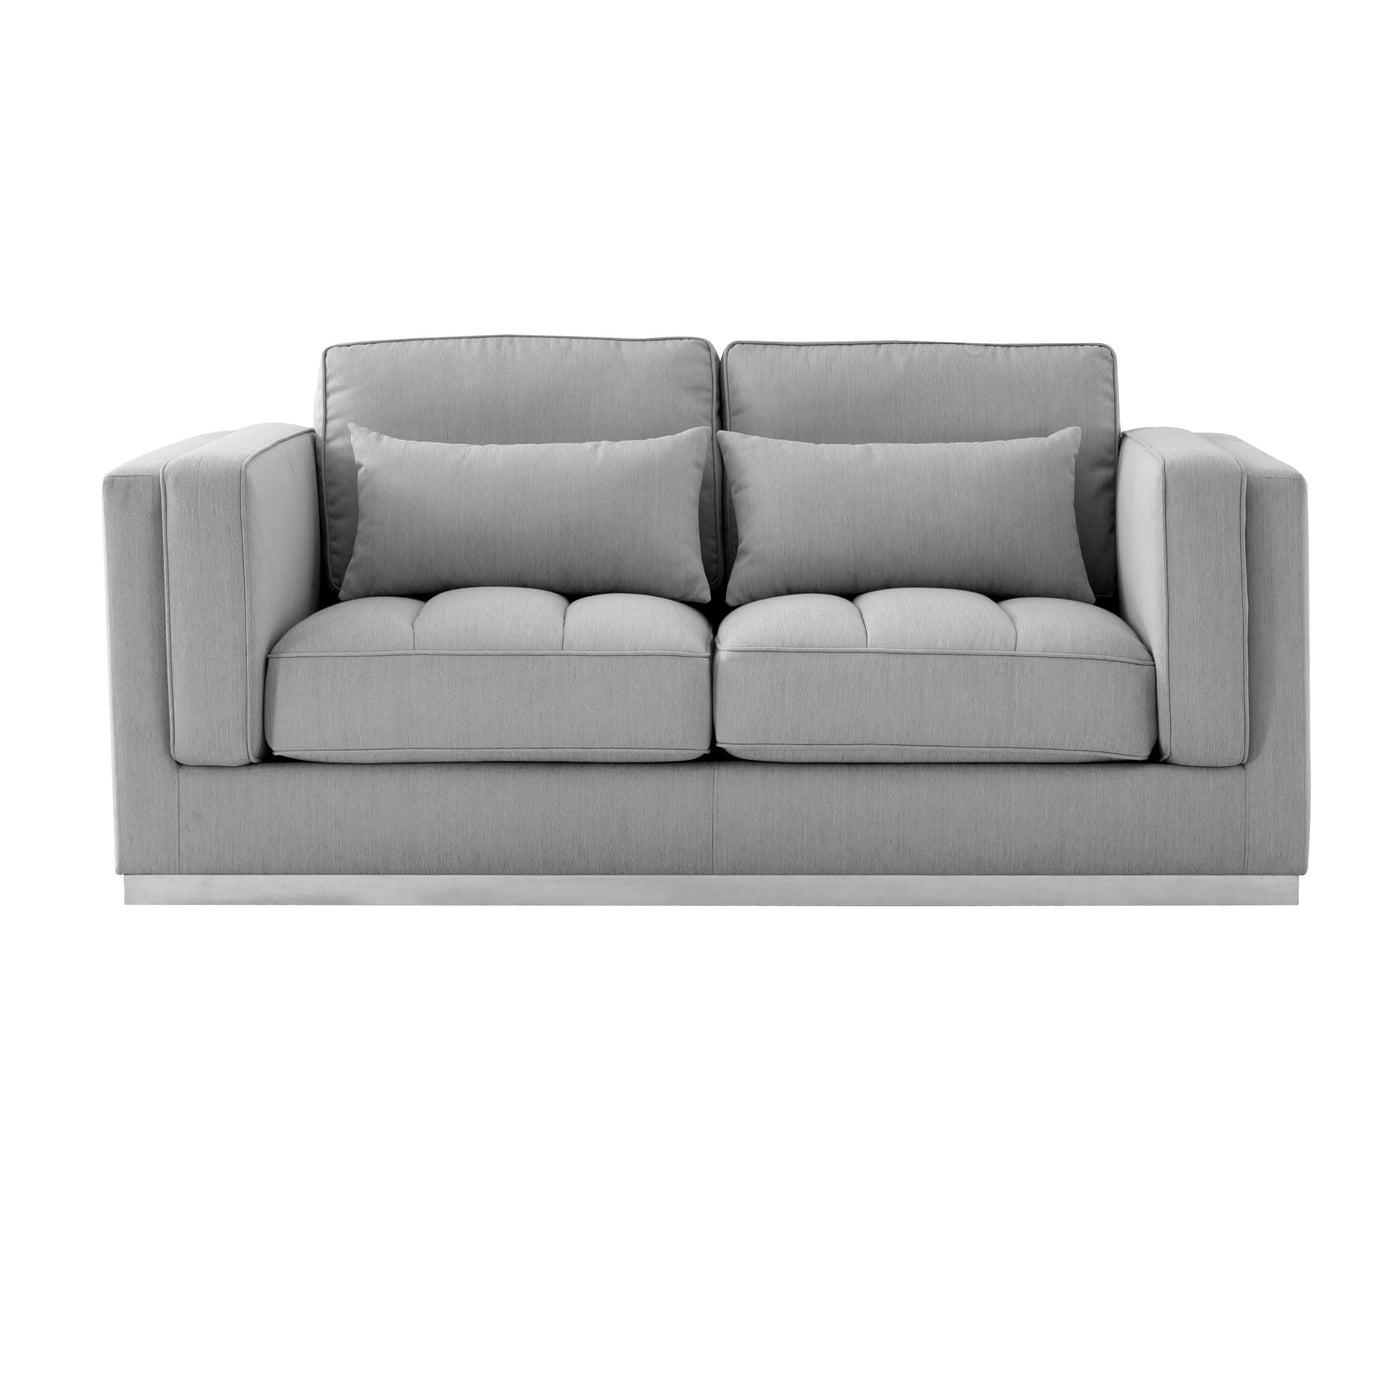 Marzano 2 Seater Sofa